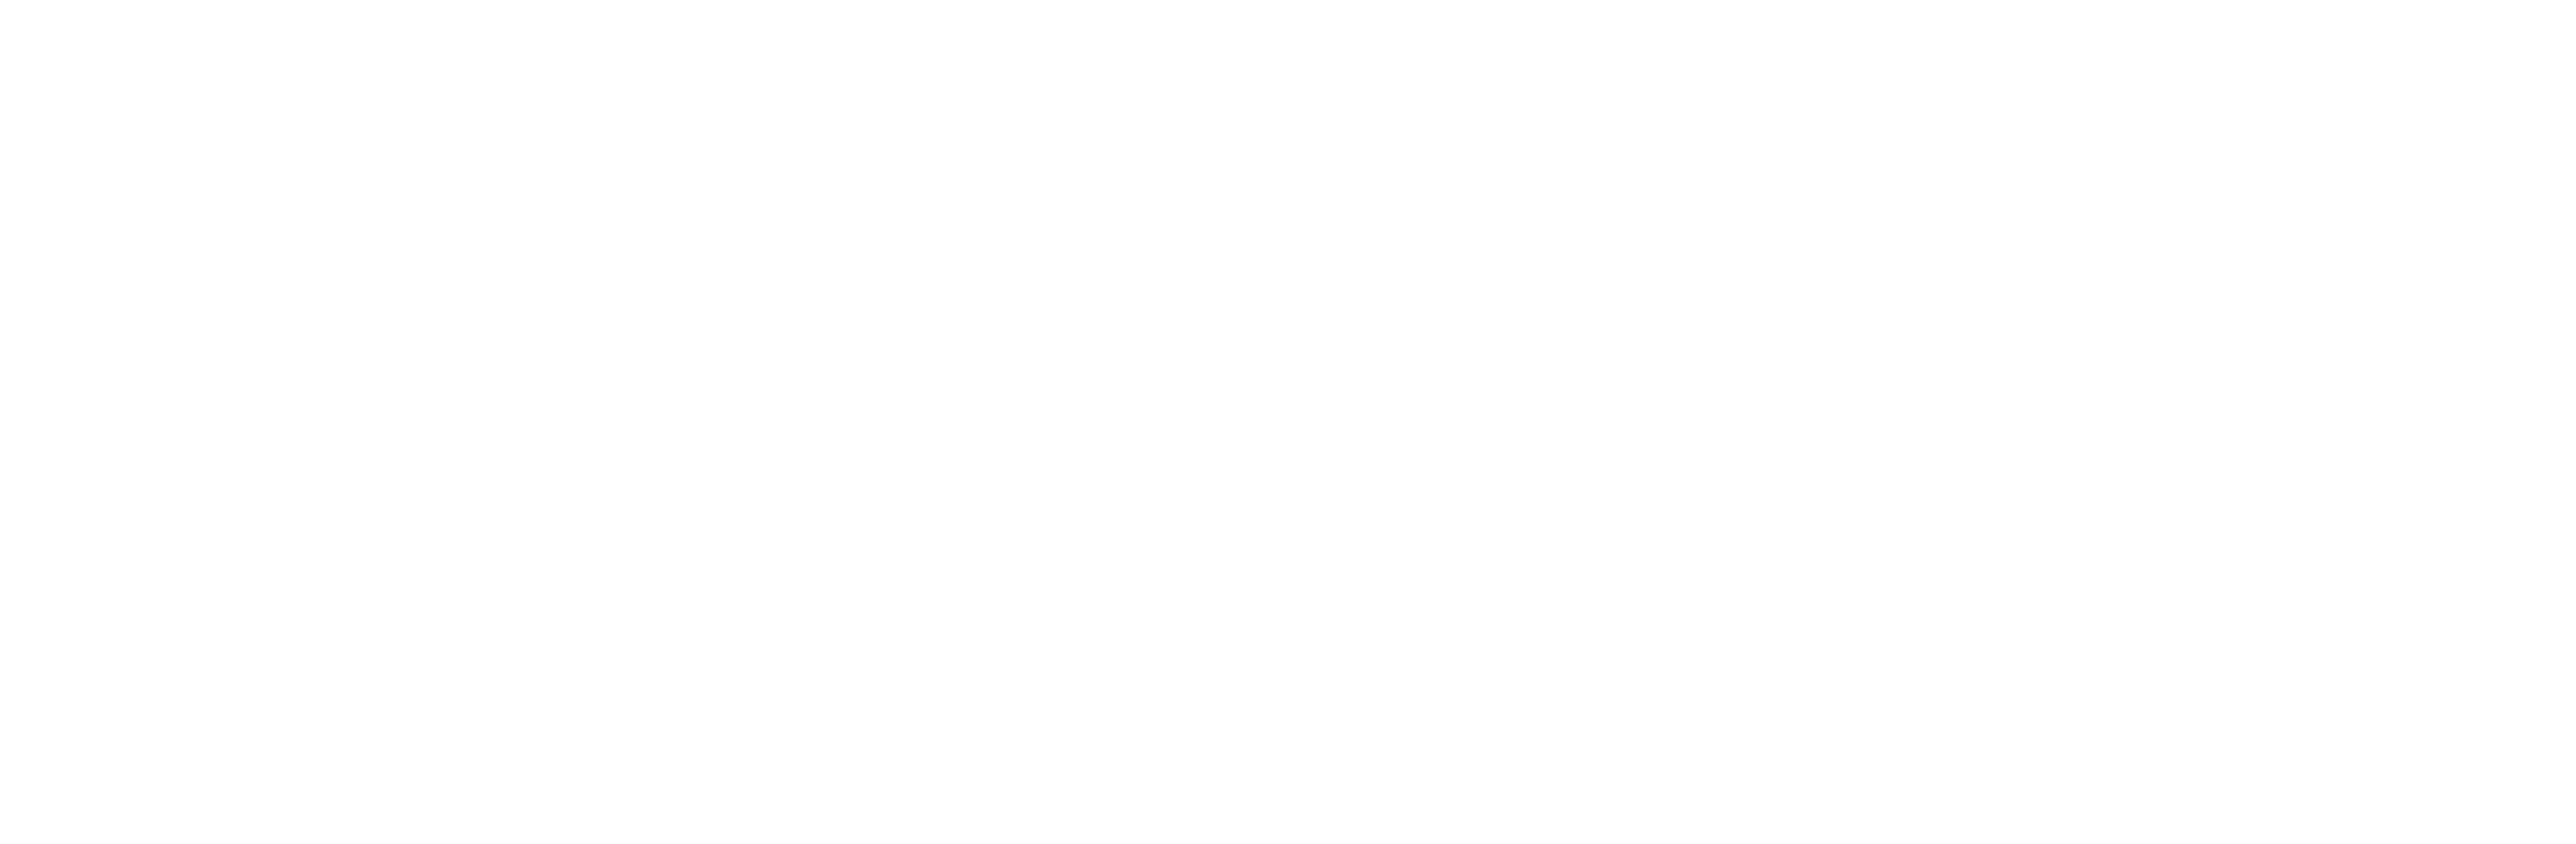 netfontus white logo